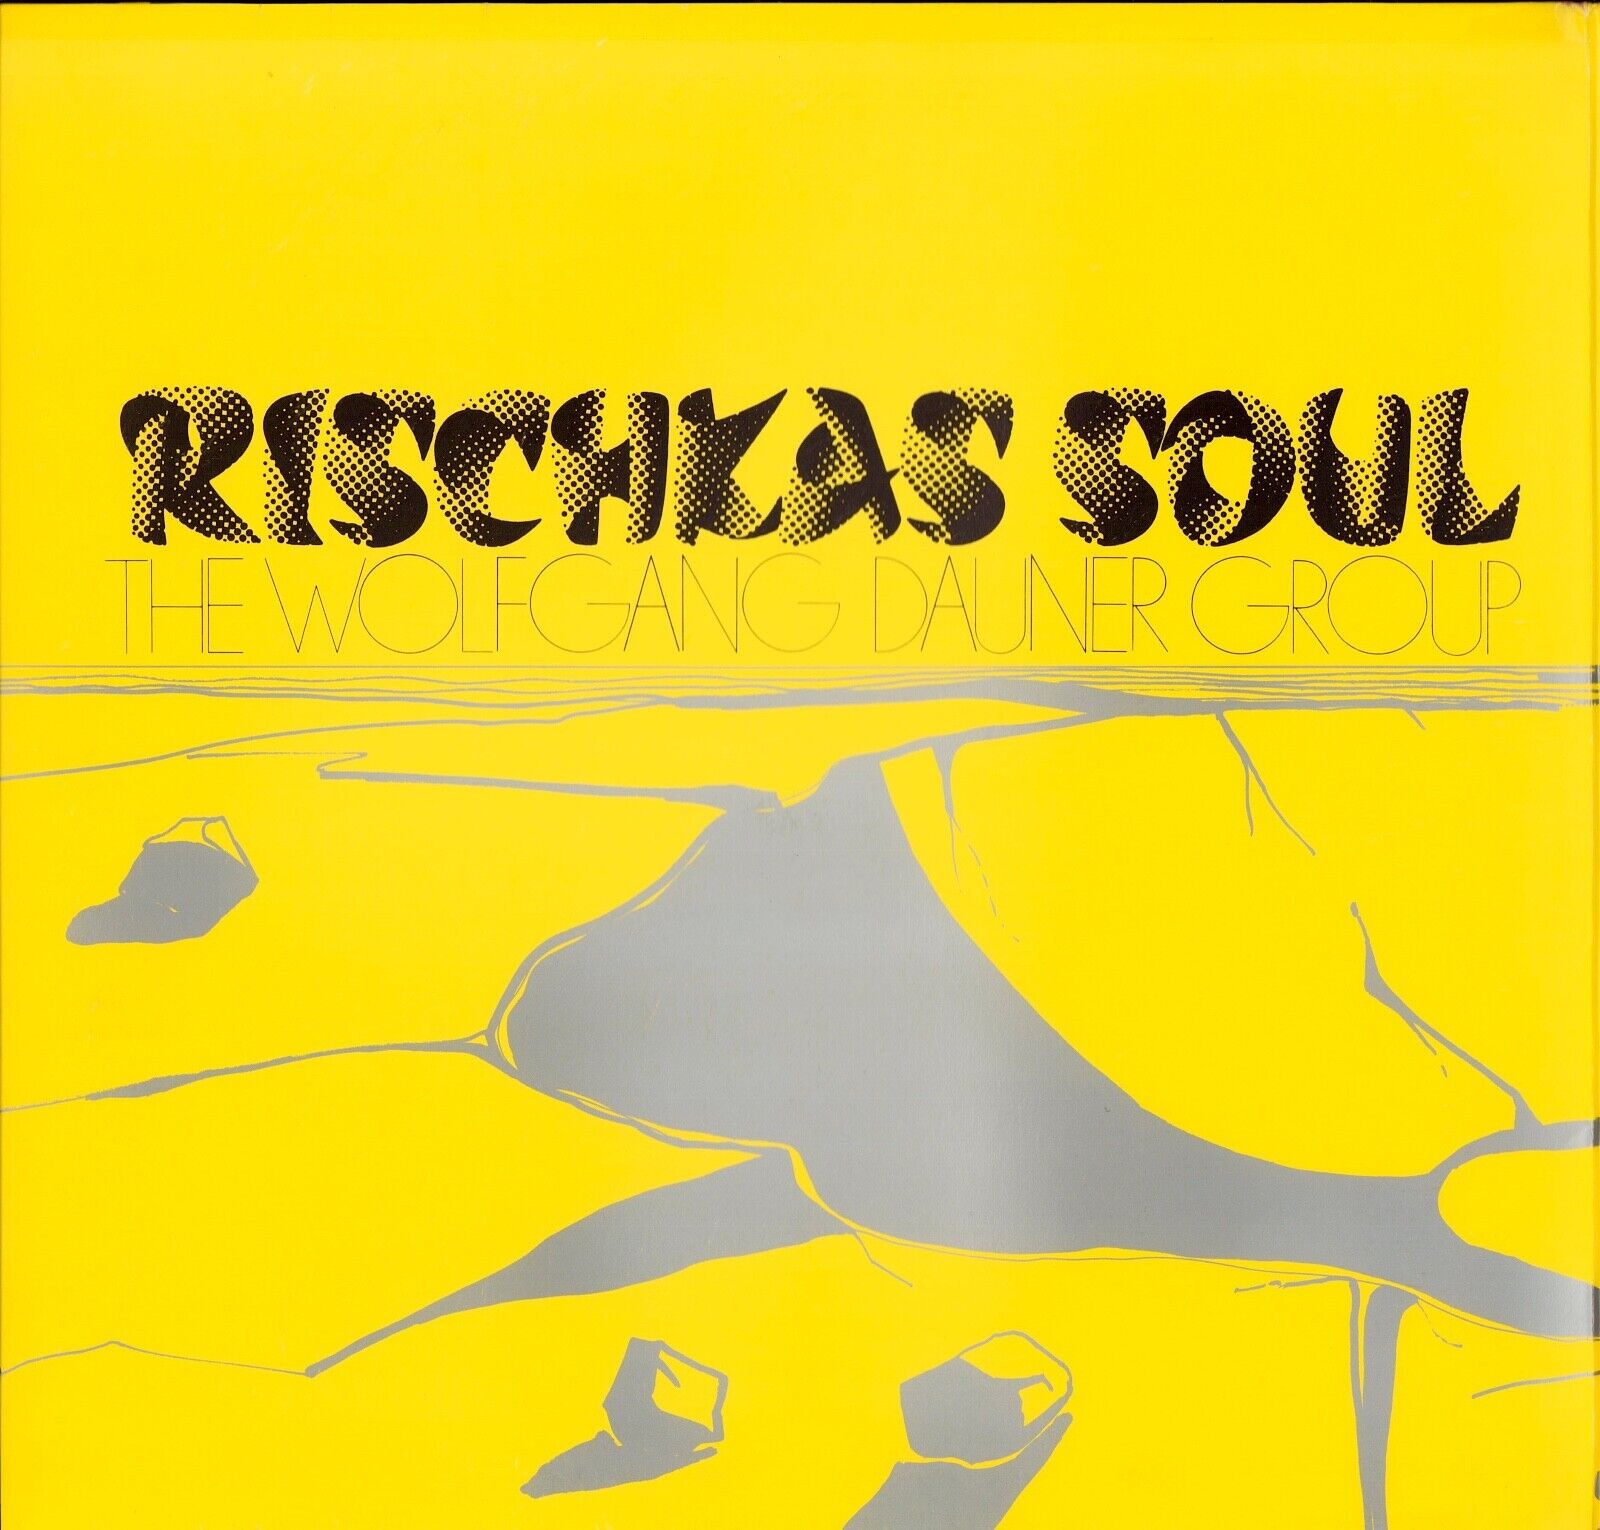 The Wolfgang Dauner Group ‎- Rischkas Soul Vinyl LP